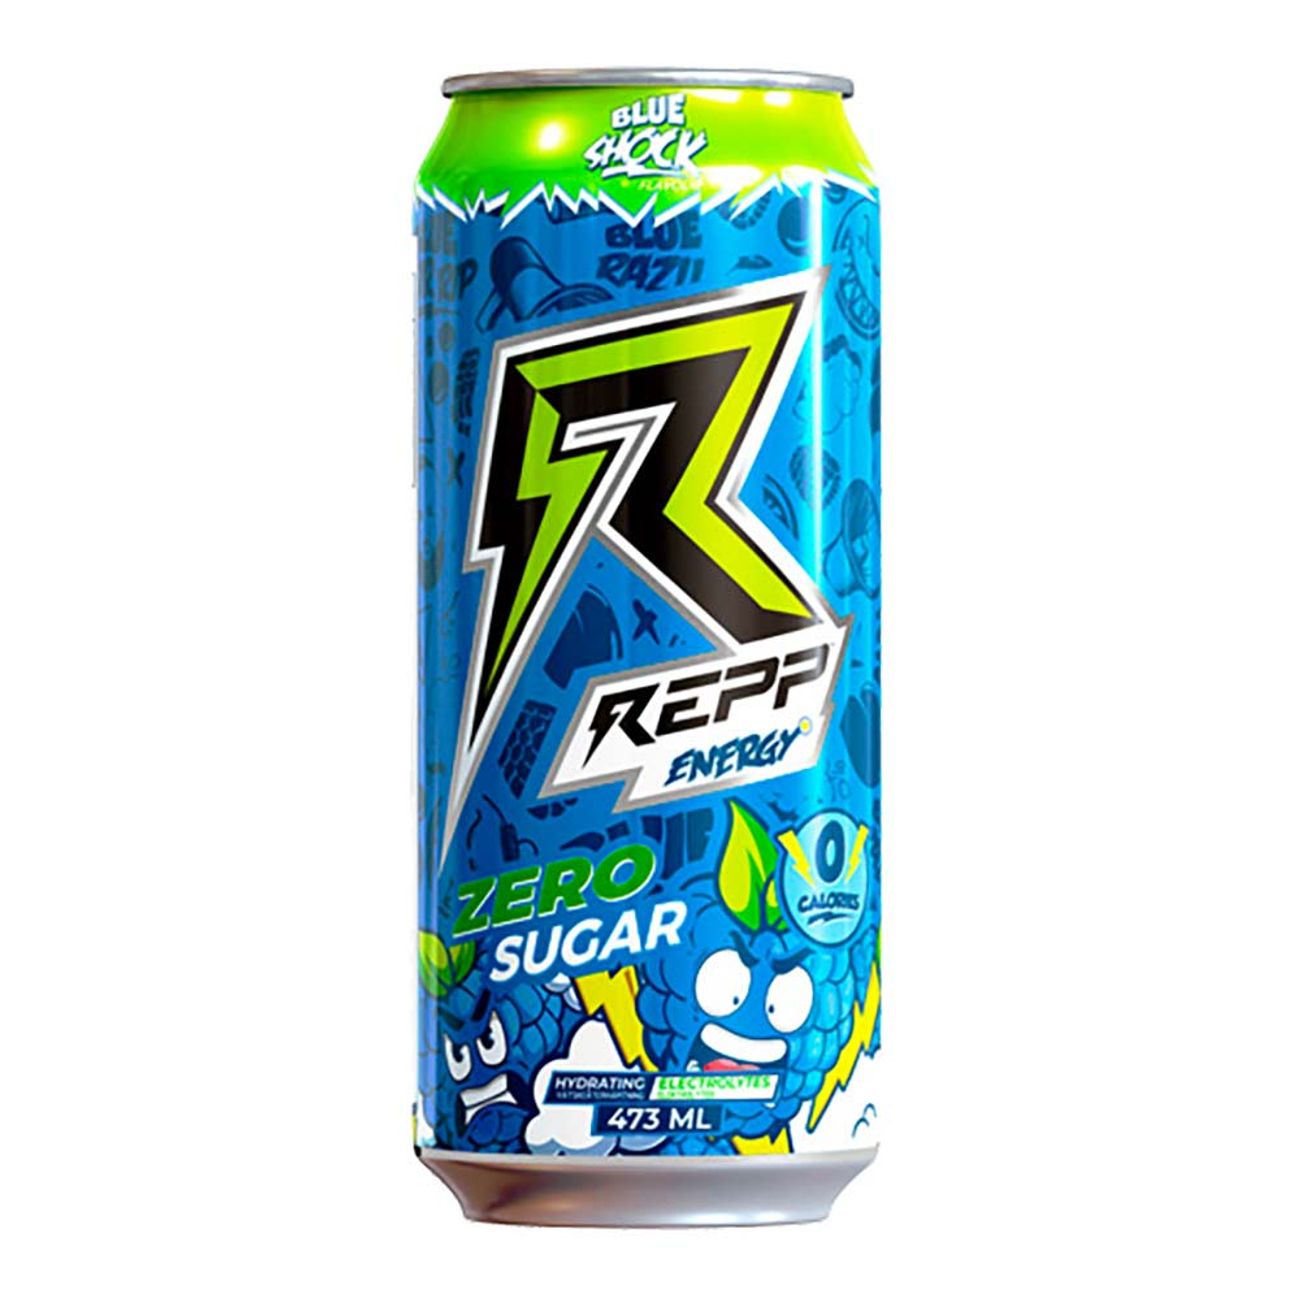 repp-energy-blue-shock-94292-1